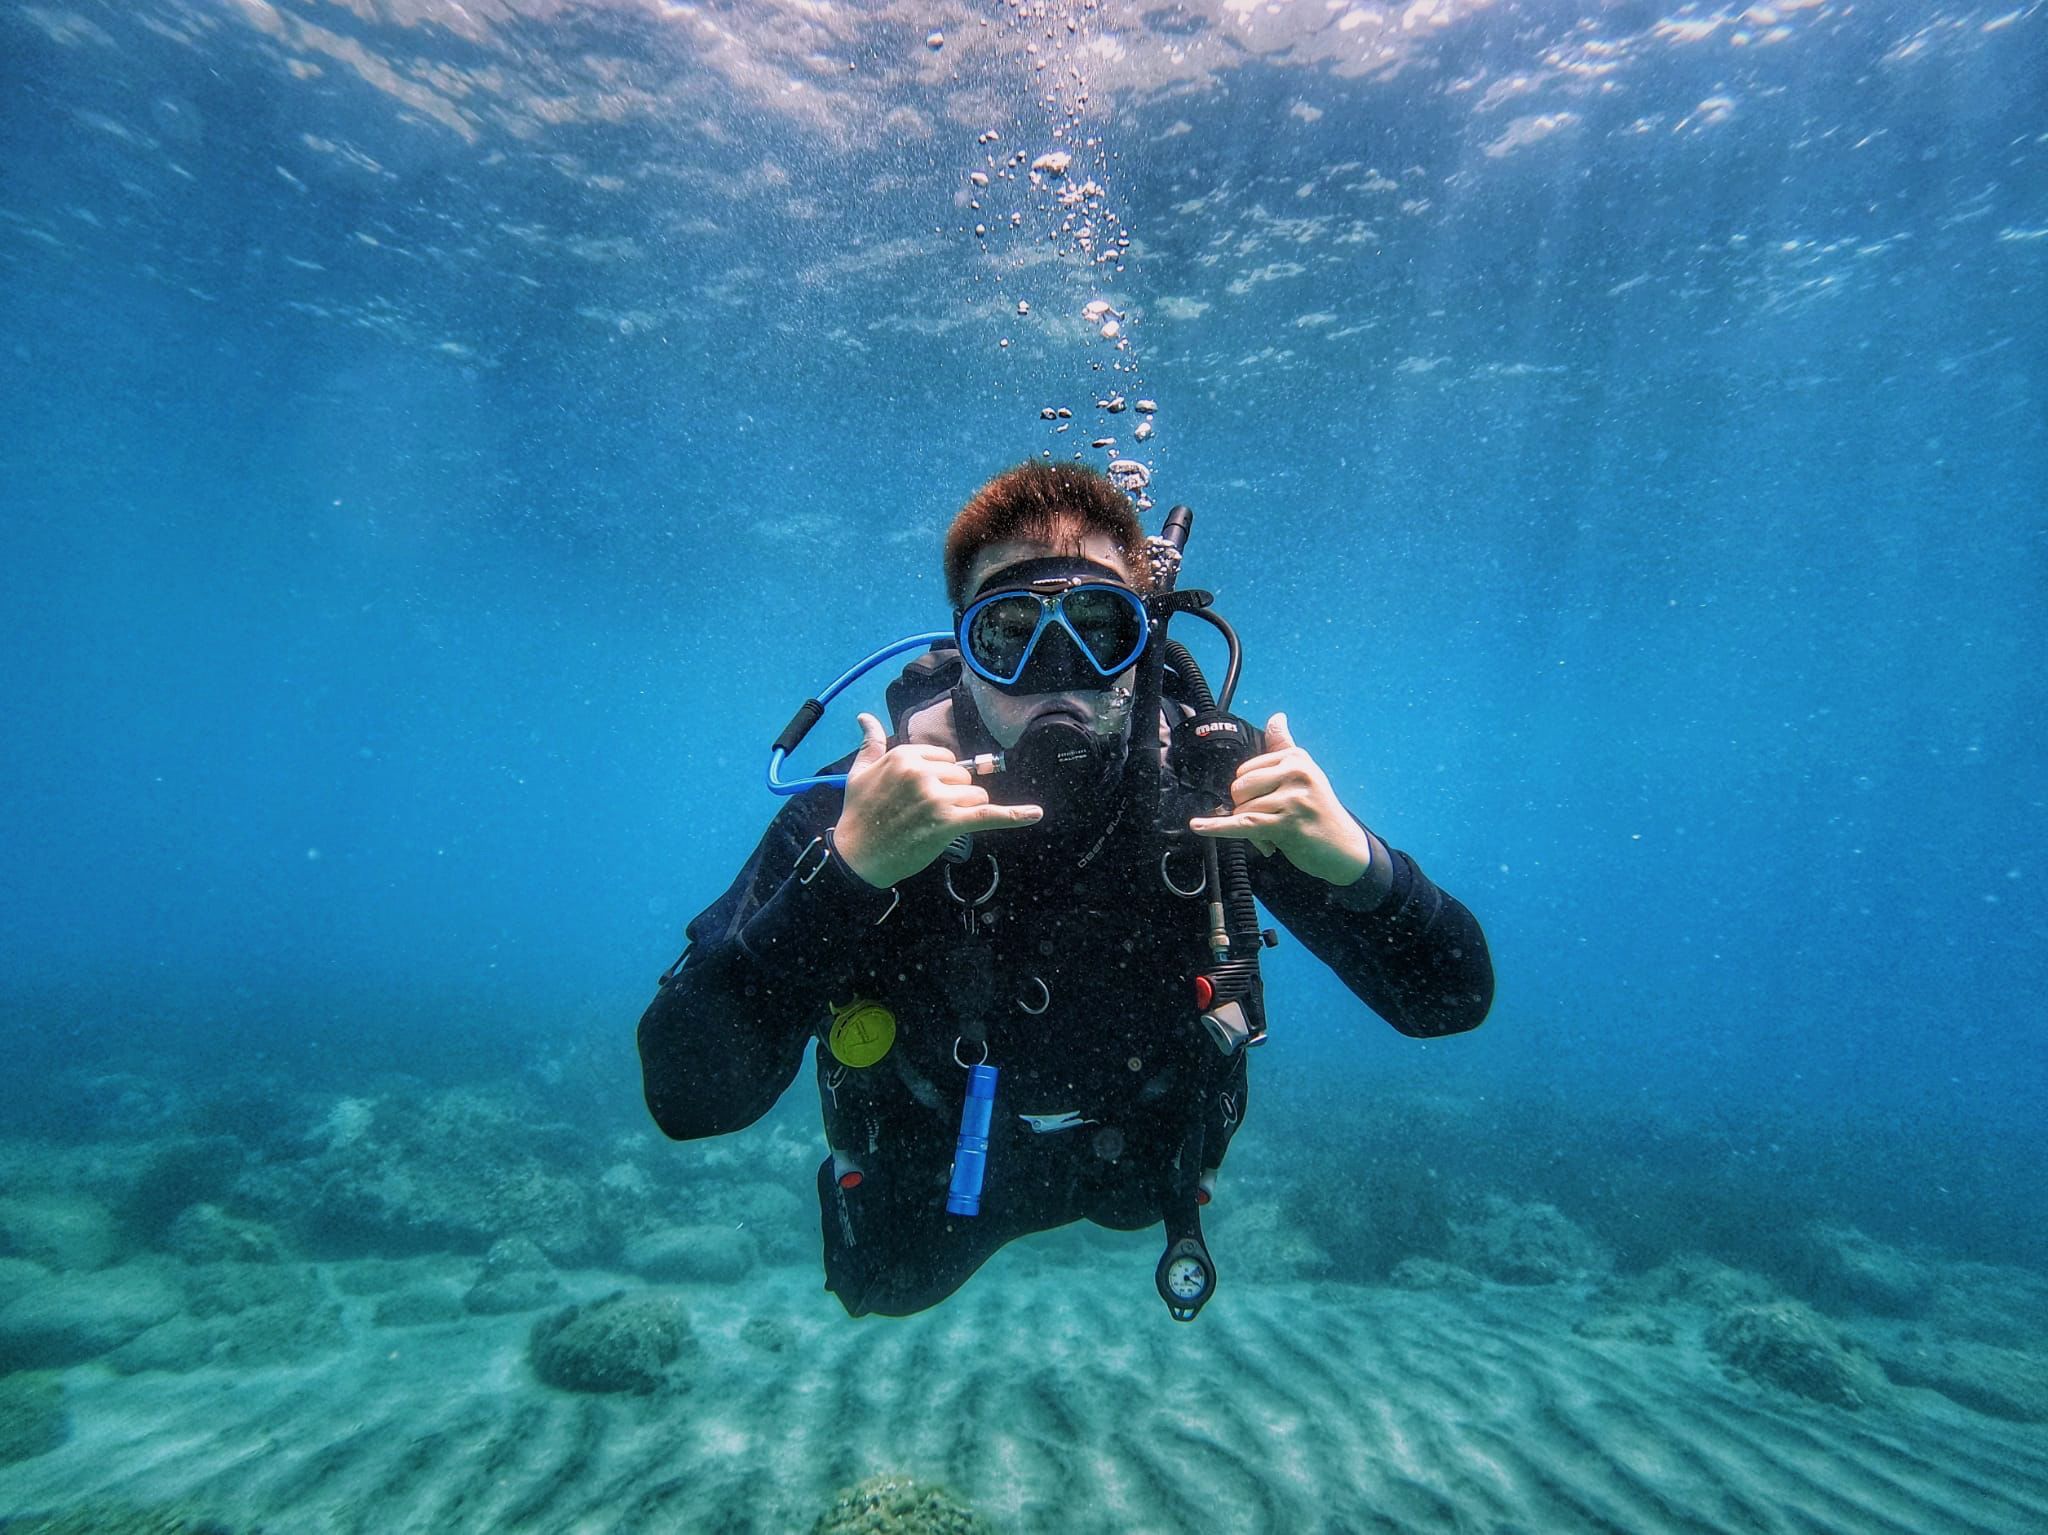 Plongez au cœur de vos passions : explorez les carrières en photographie sous-marine